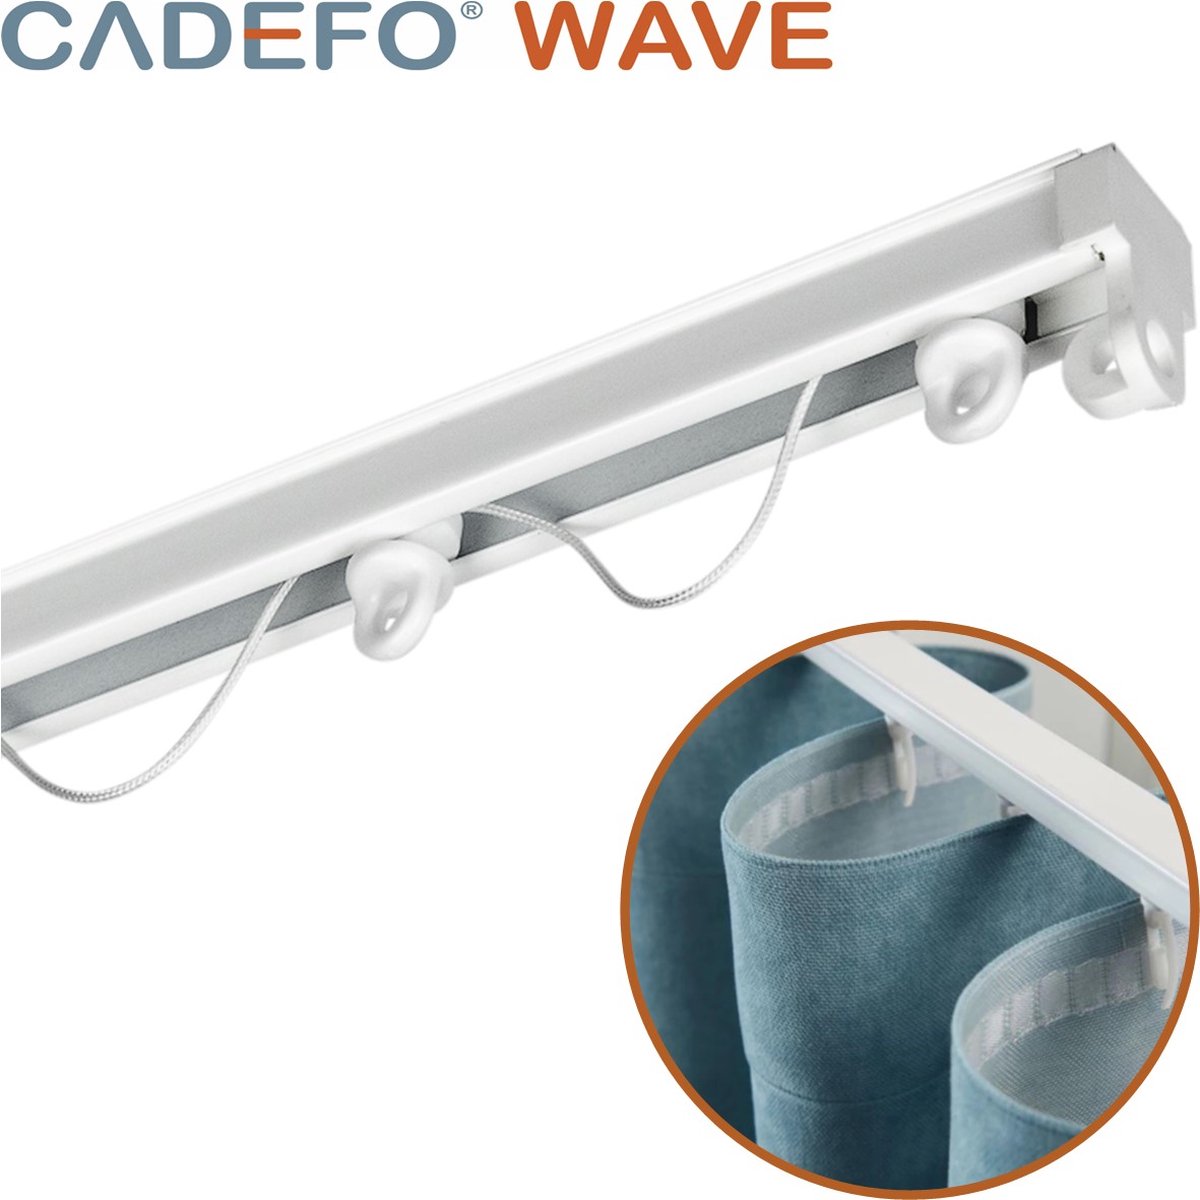 CADEFO WAVE (351 - 400 cm) Gordijnrails - Compleet op maat! - UIT 1 STUK - Leverbaar tot 6 meter - Plafondbevestiging - Lengte 382 cm